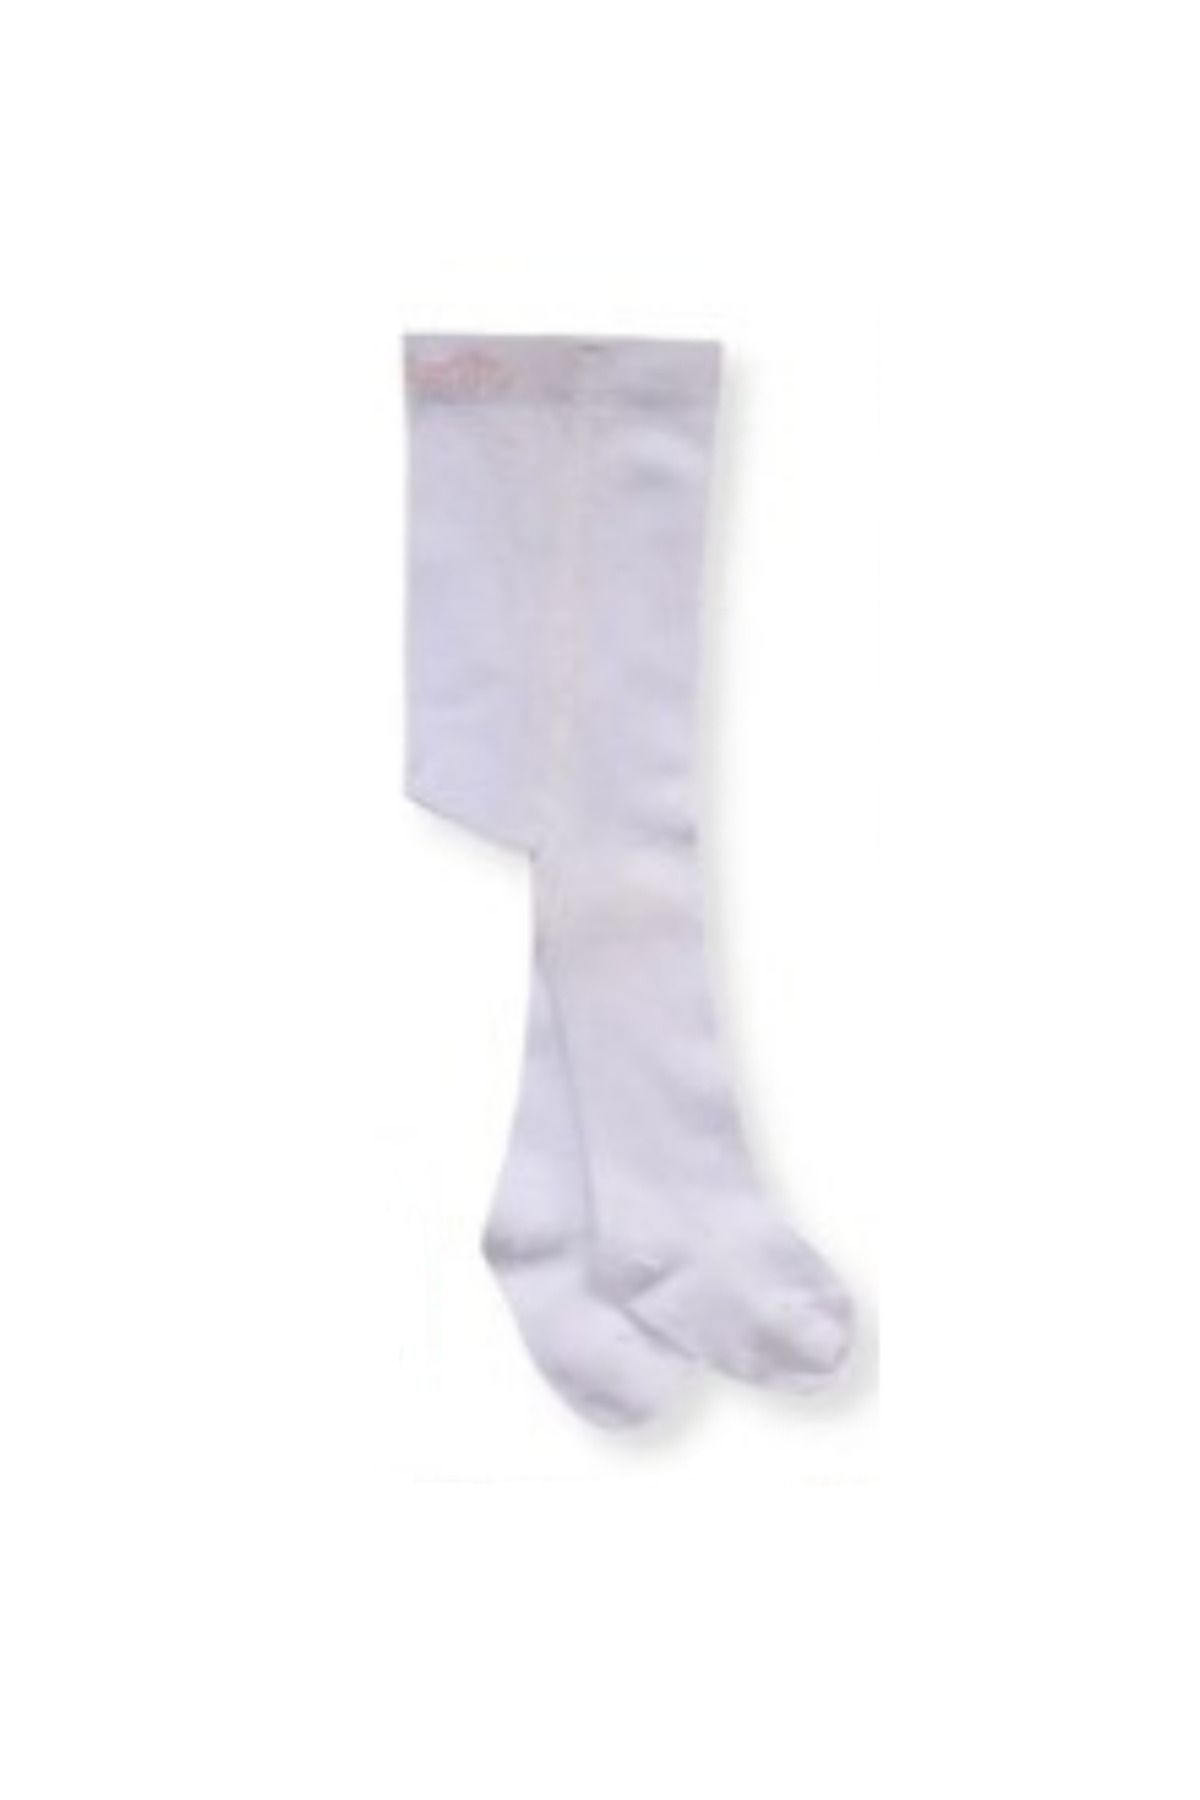 Bebetto Külotlu Çorap Kız 1 Adet (ALWAYS) S 633